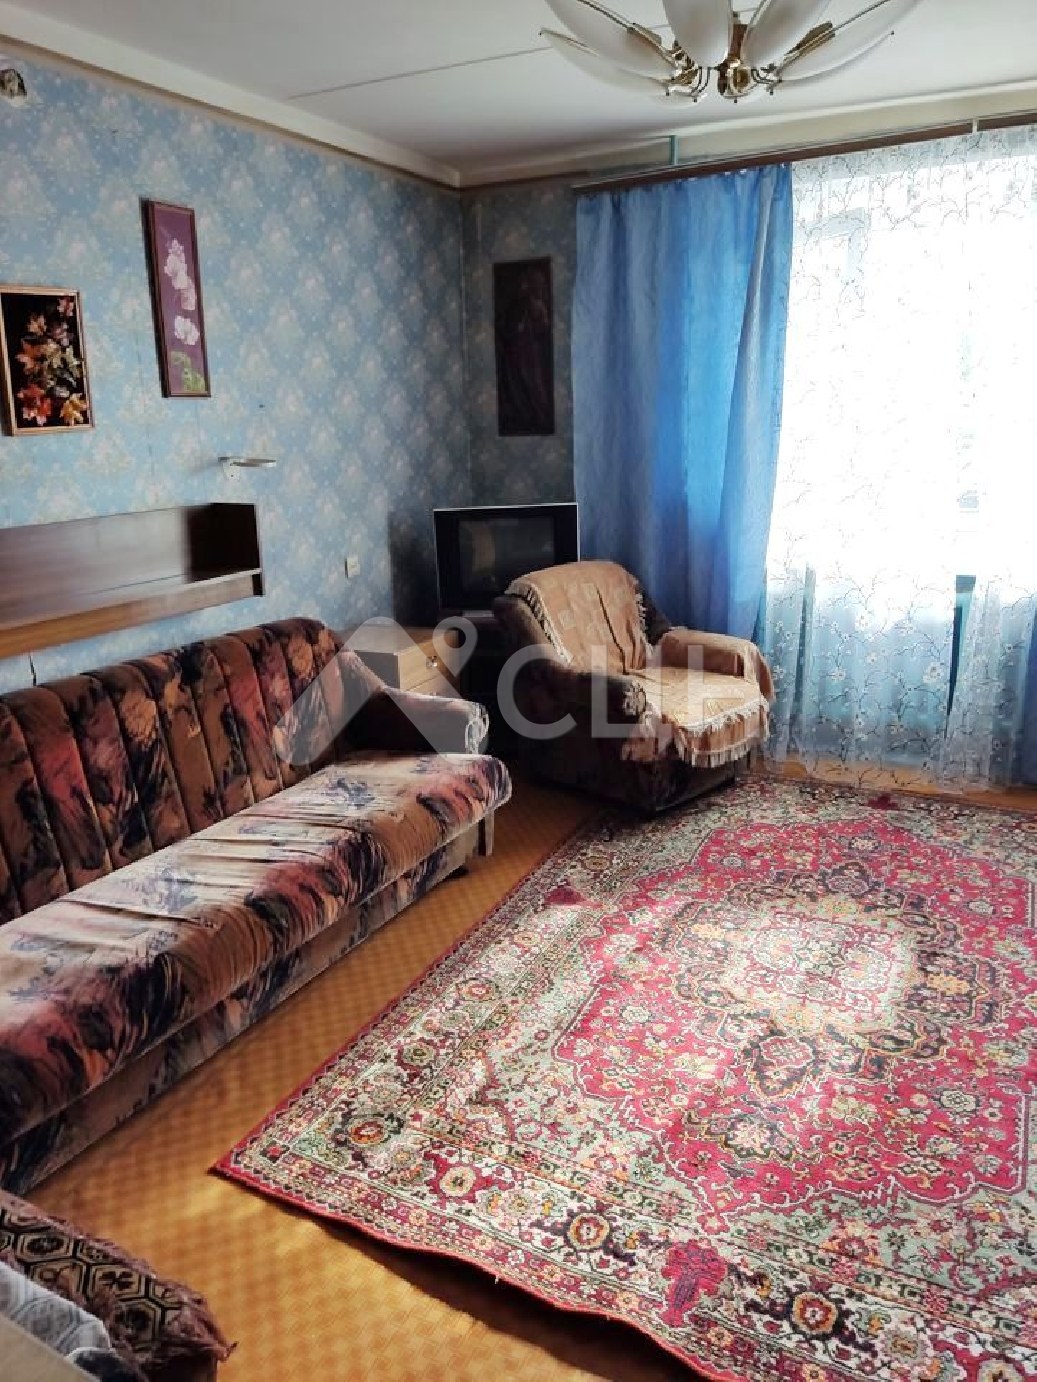 продажа квартир саров
: Г. Саров, улица Некрасова, 11, 3-комн квартира, этаж 2 из 9, продажа.